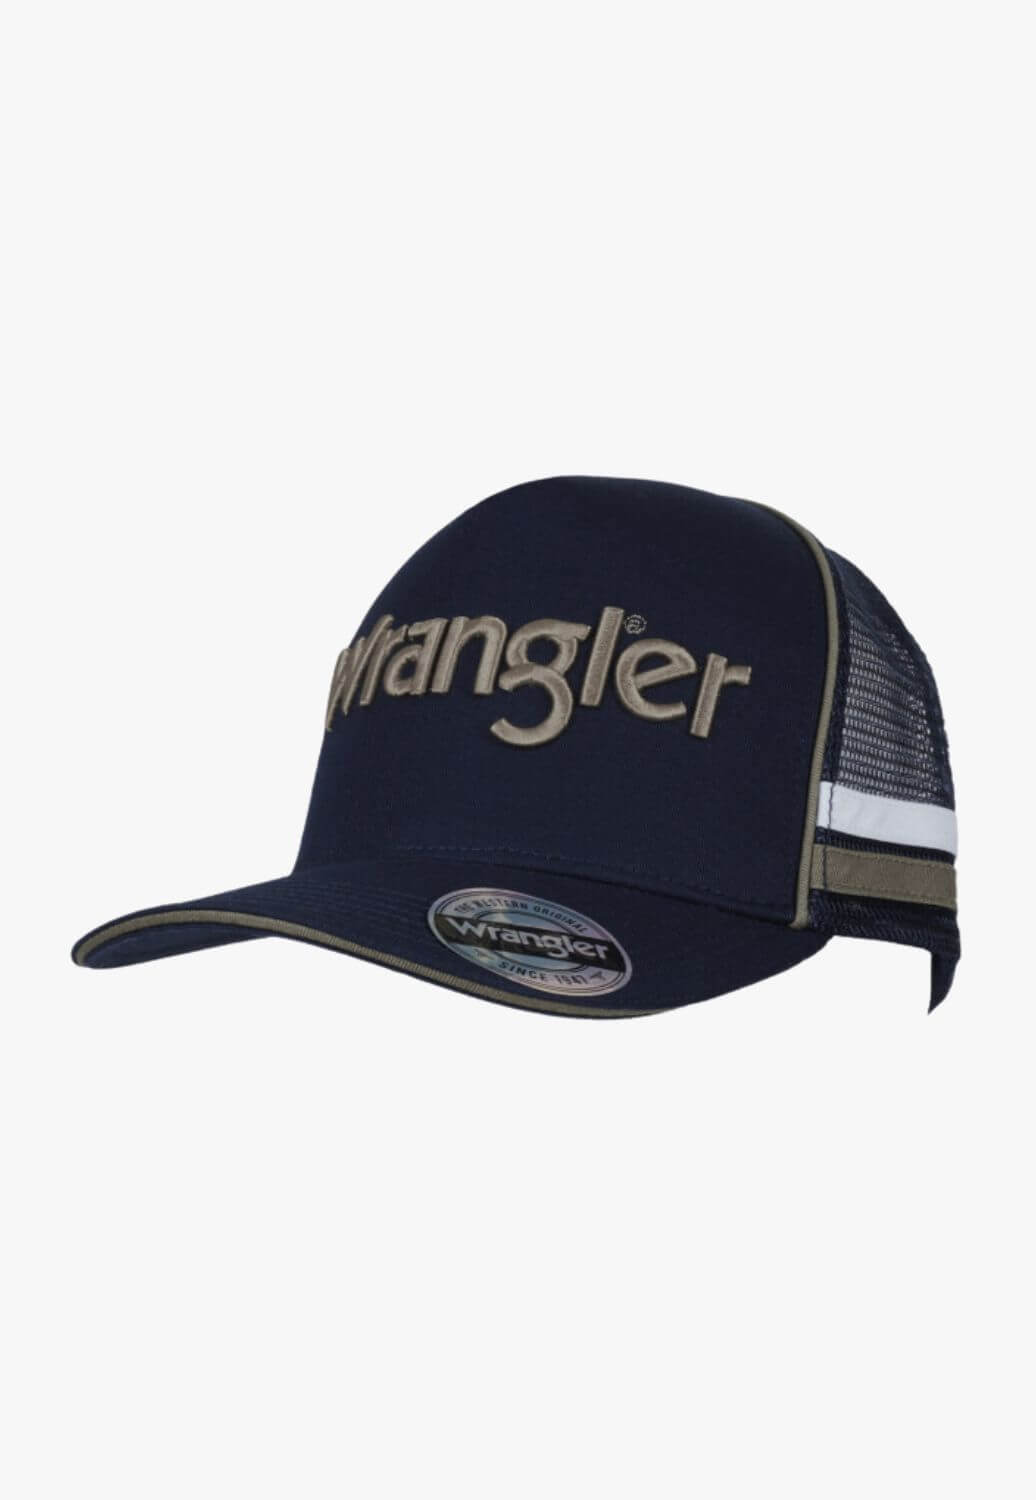 Wrangler Dan Trucker Cap